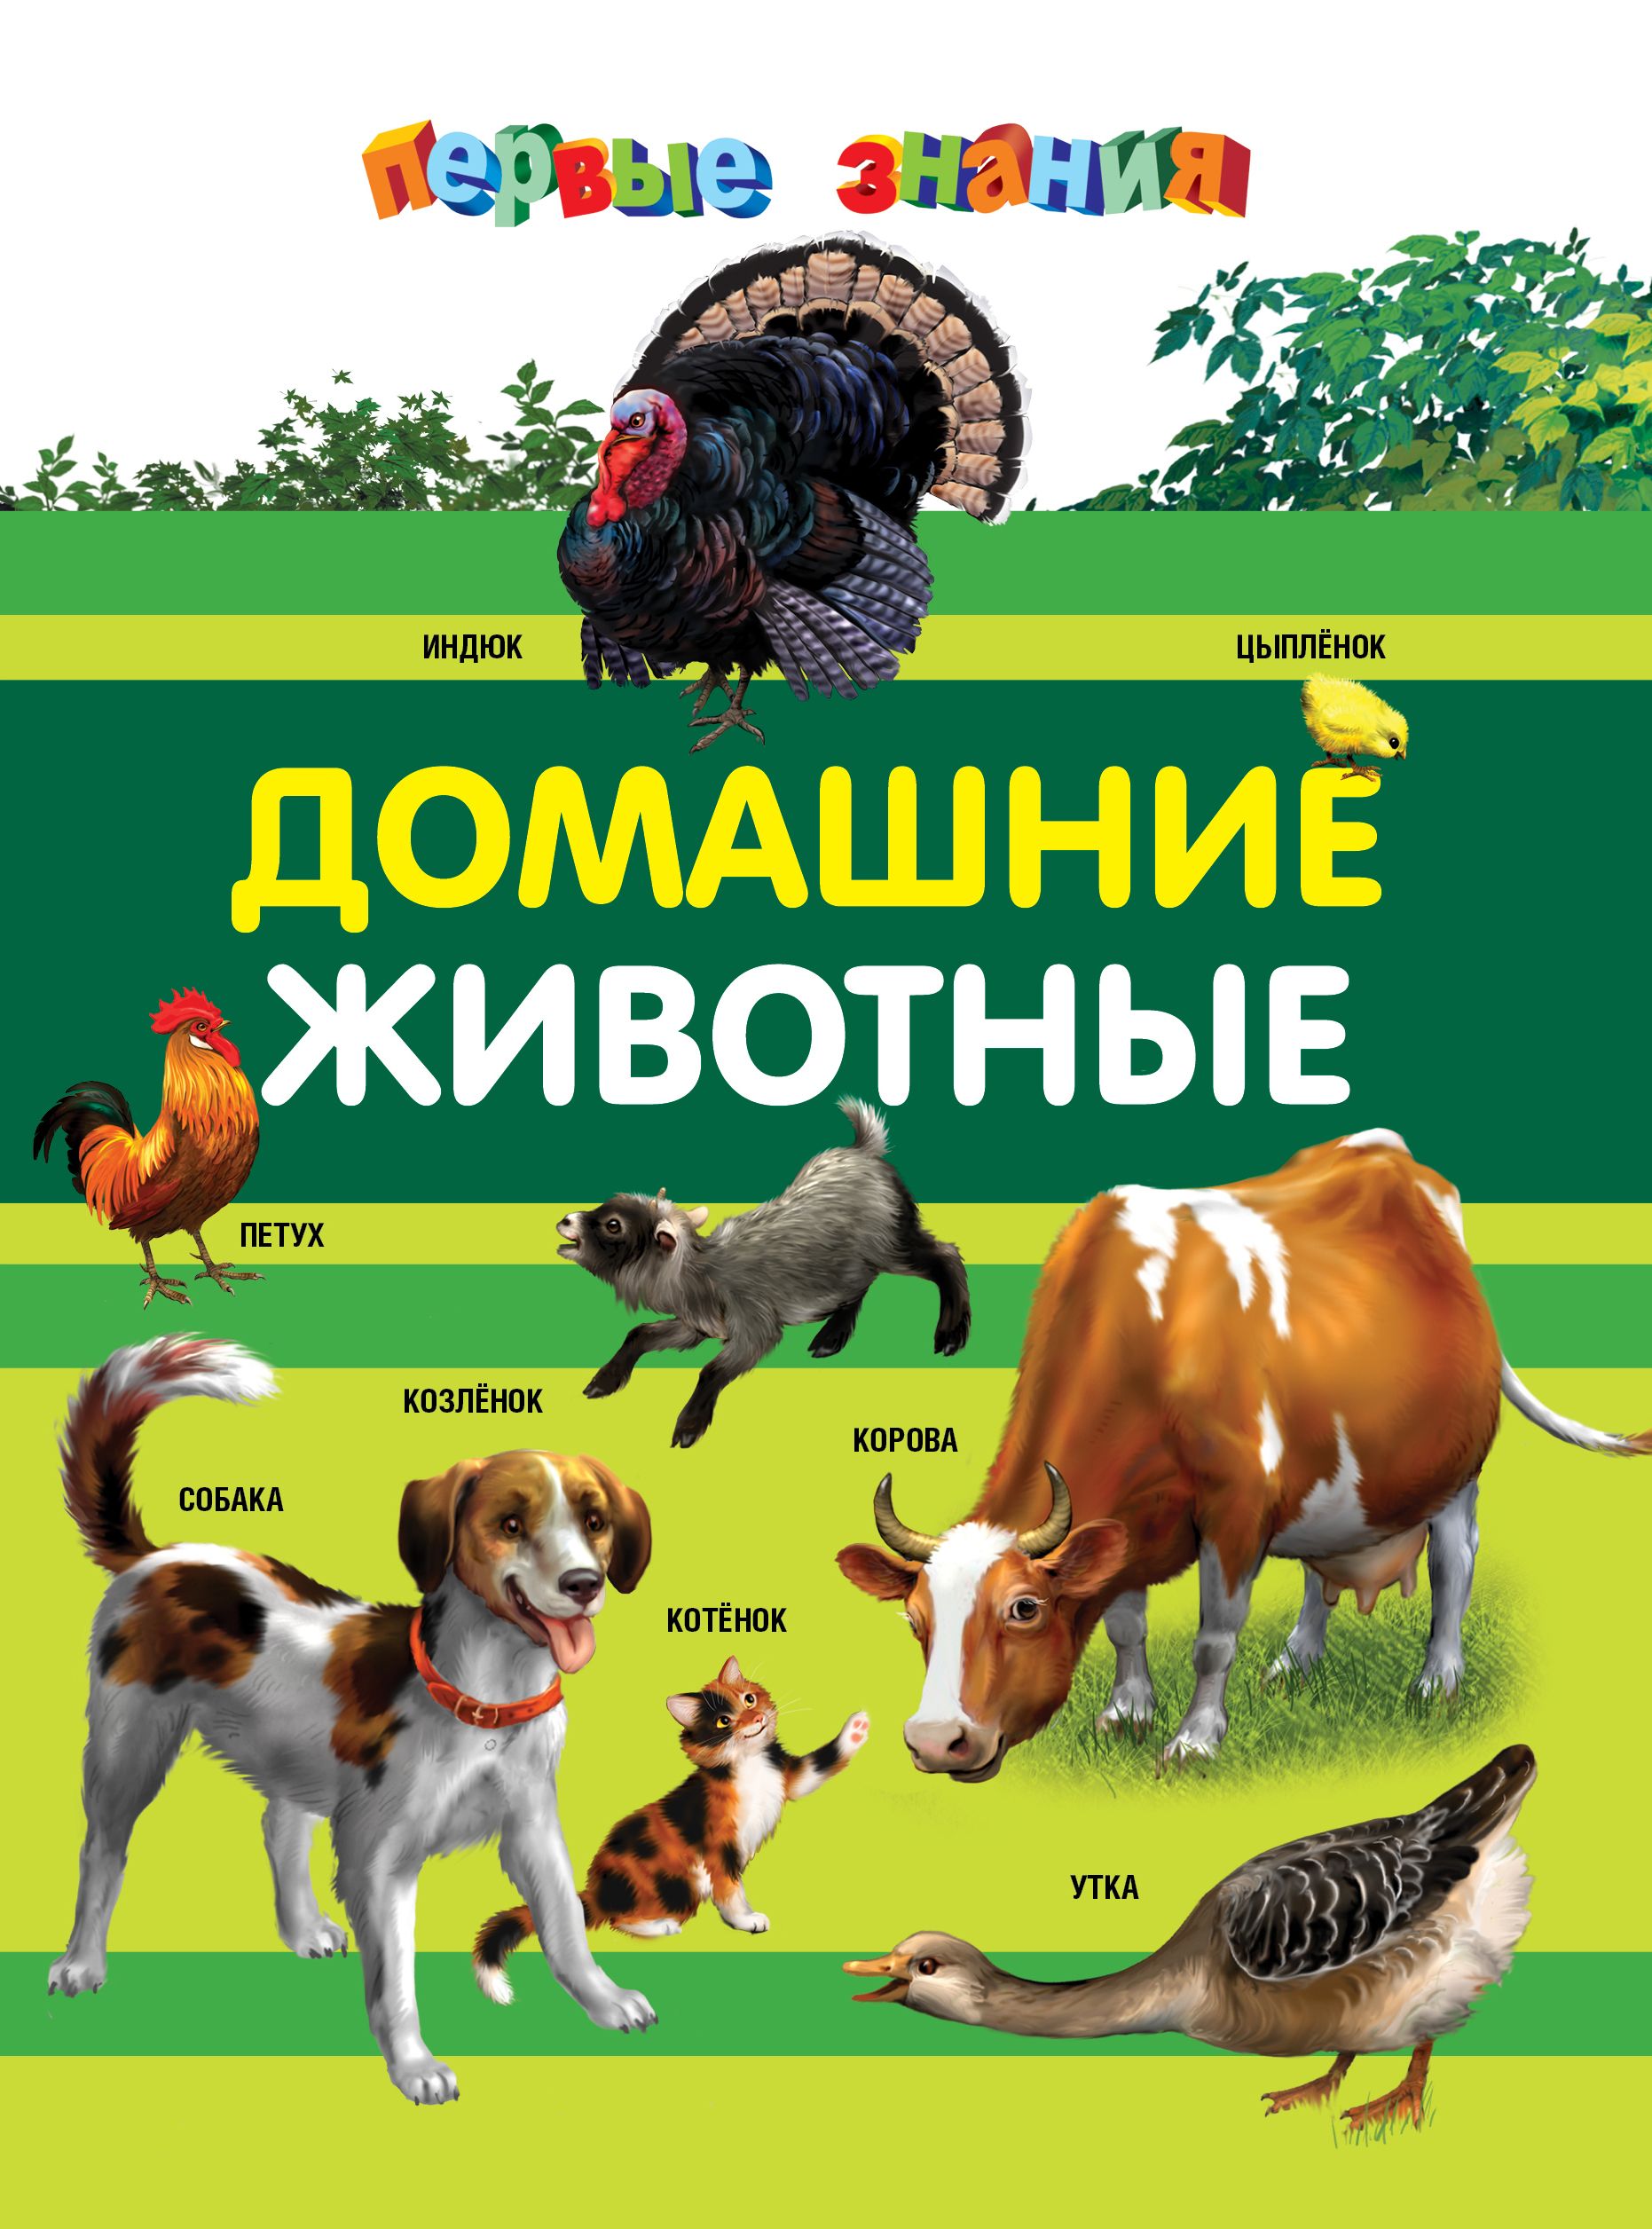 Книги о домашних животных читать